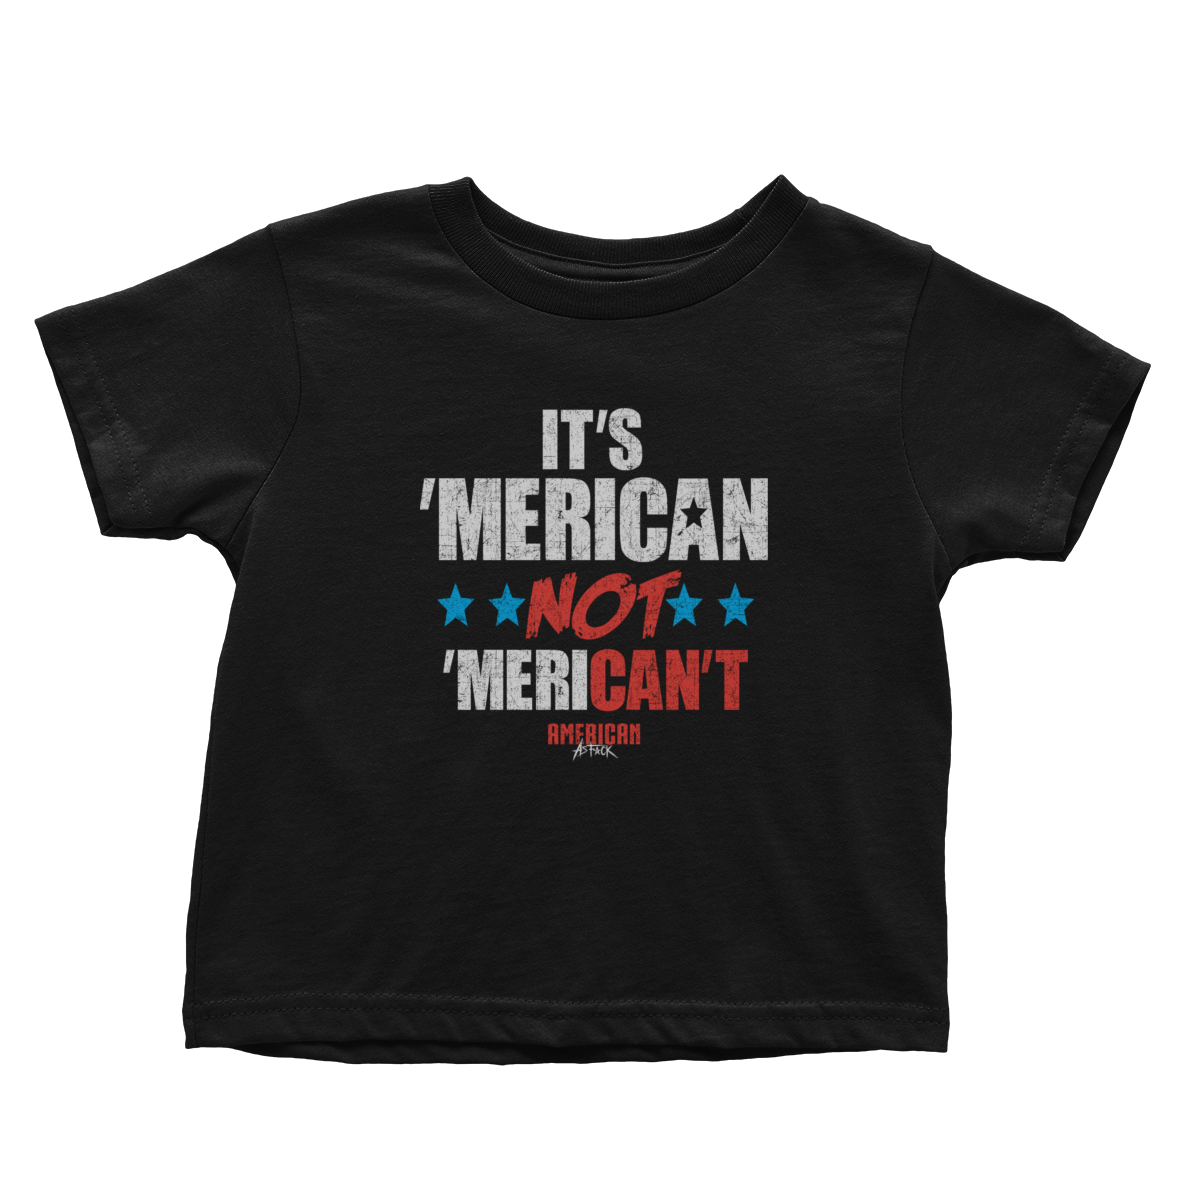 Apparel Premium Toddler Shirt / Black / 2T It's Merican Not Merican't - Toddlers